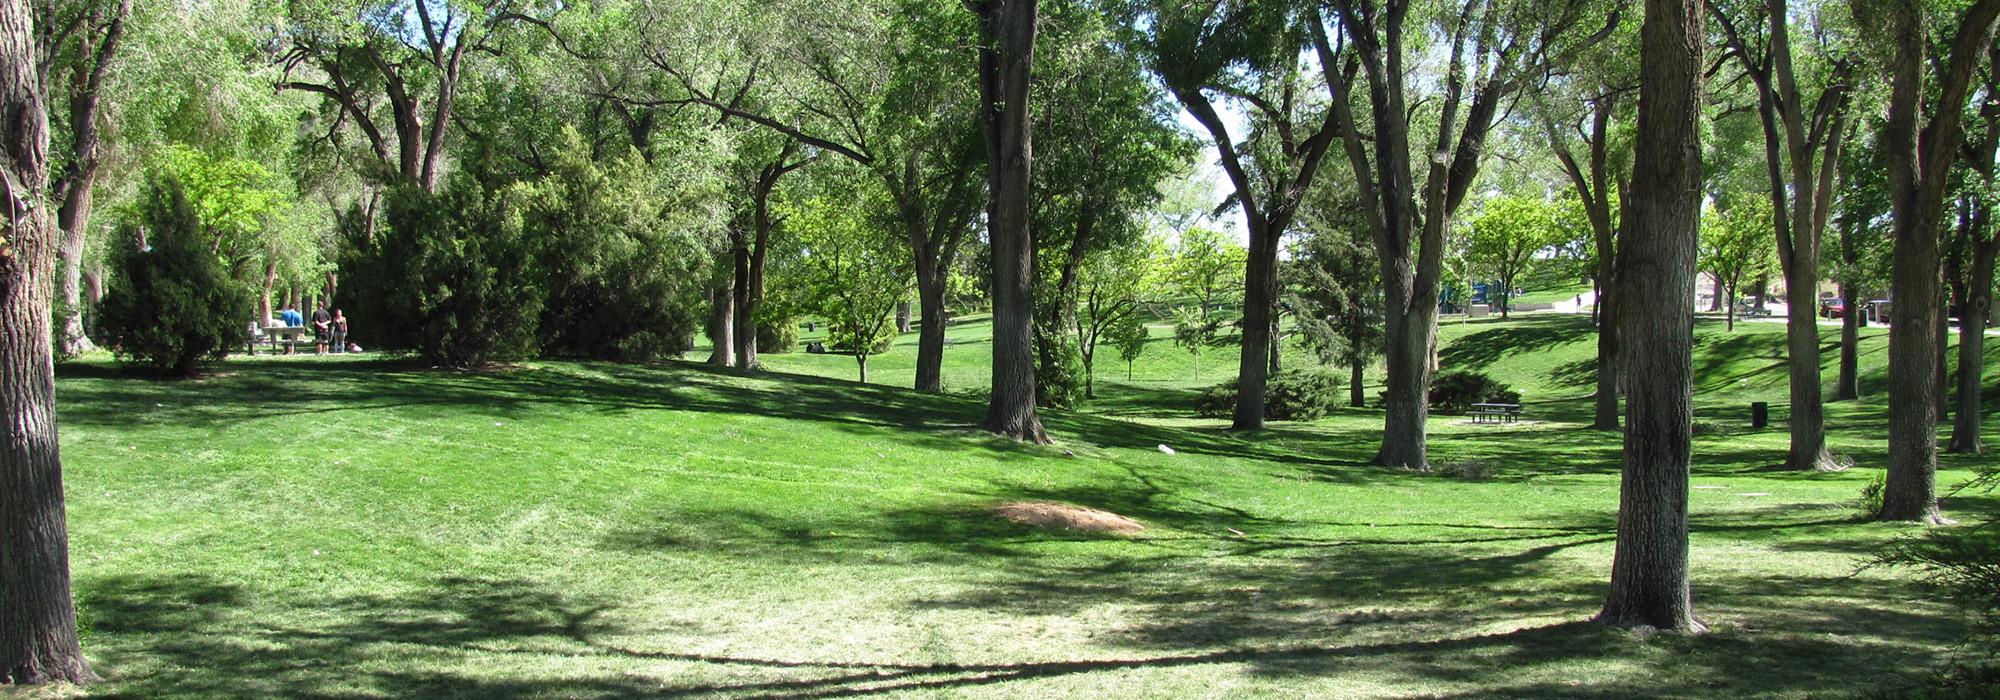 Roosevelt Park, Albuquerque, NM 